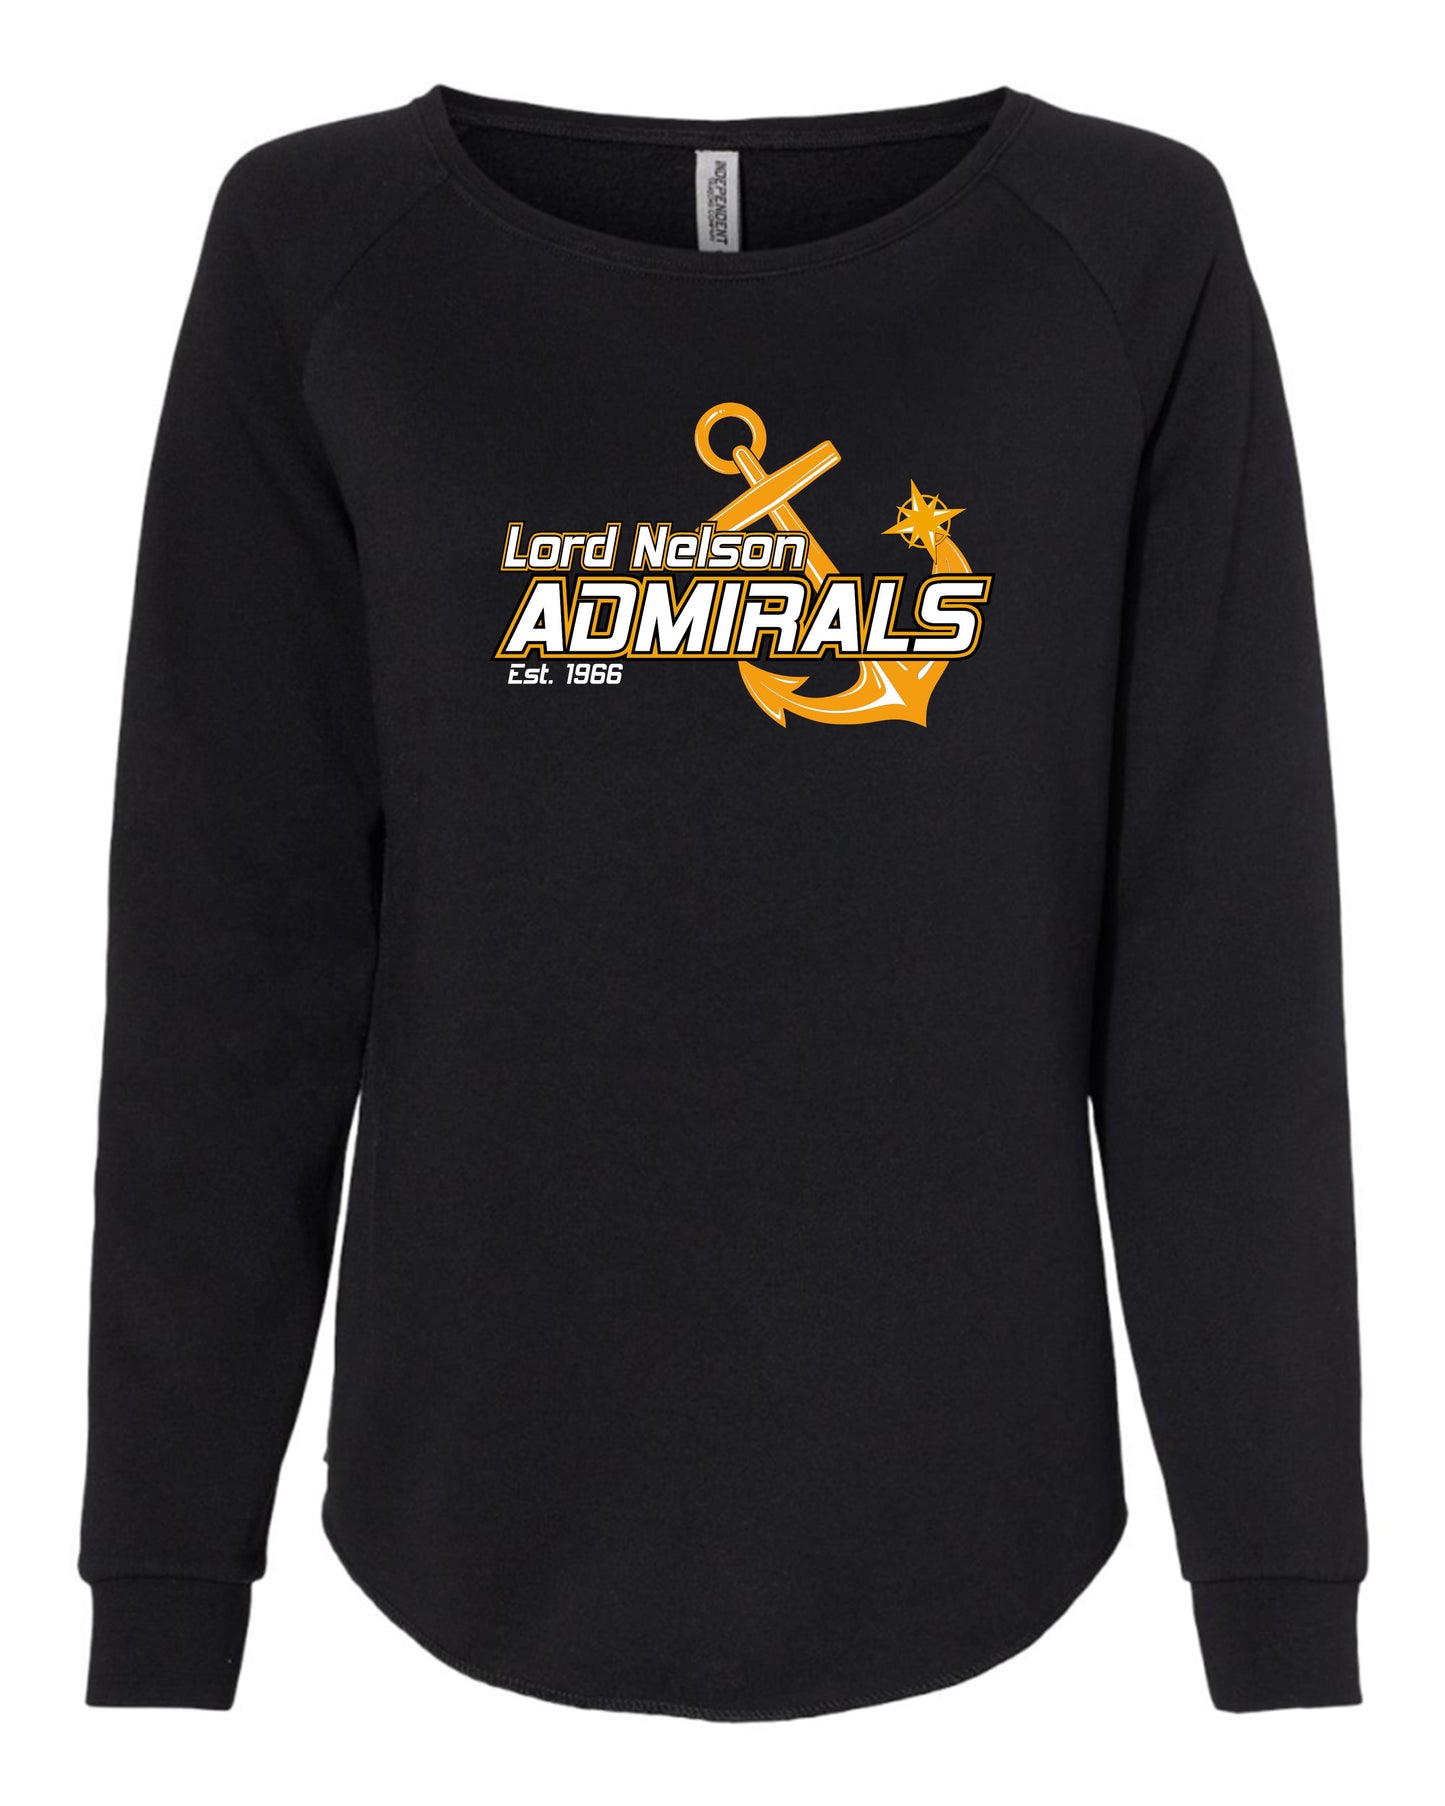 Lord Nelson Admirals Ladies Crew Neck Sweatshirt